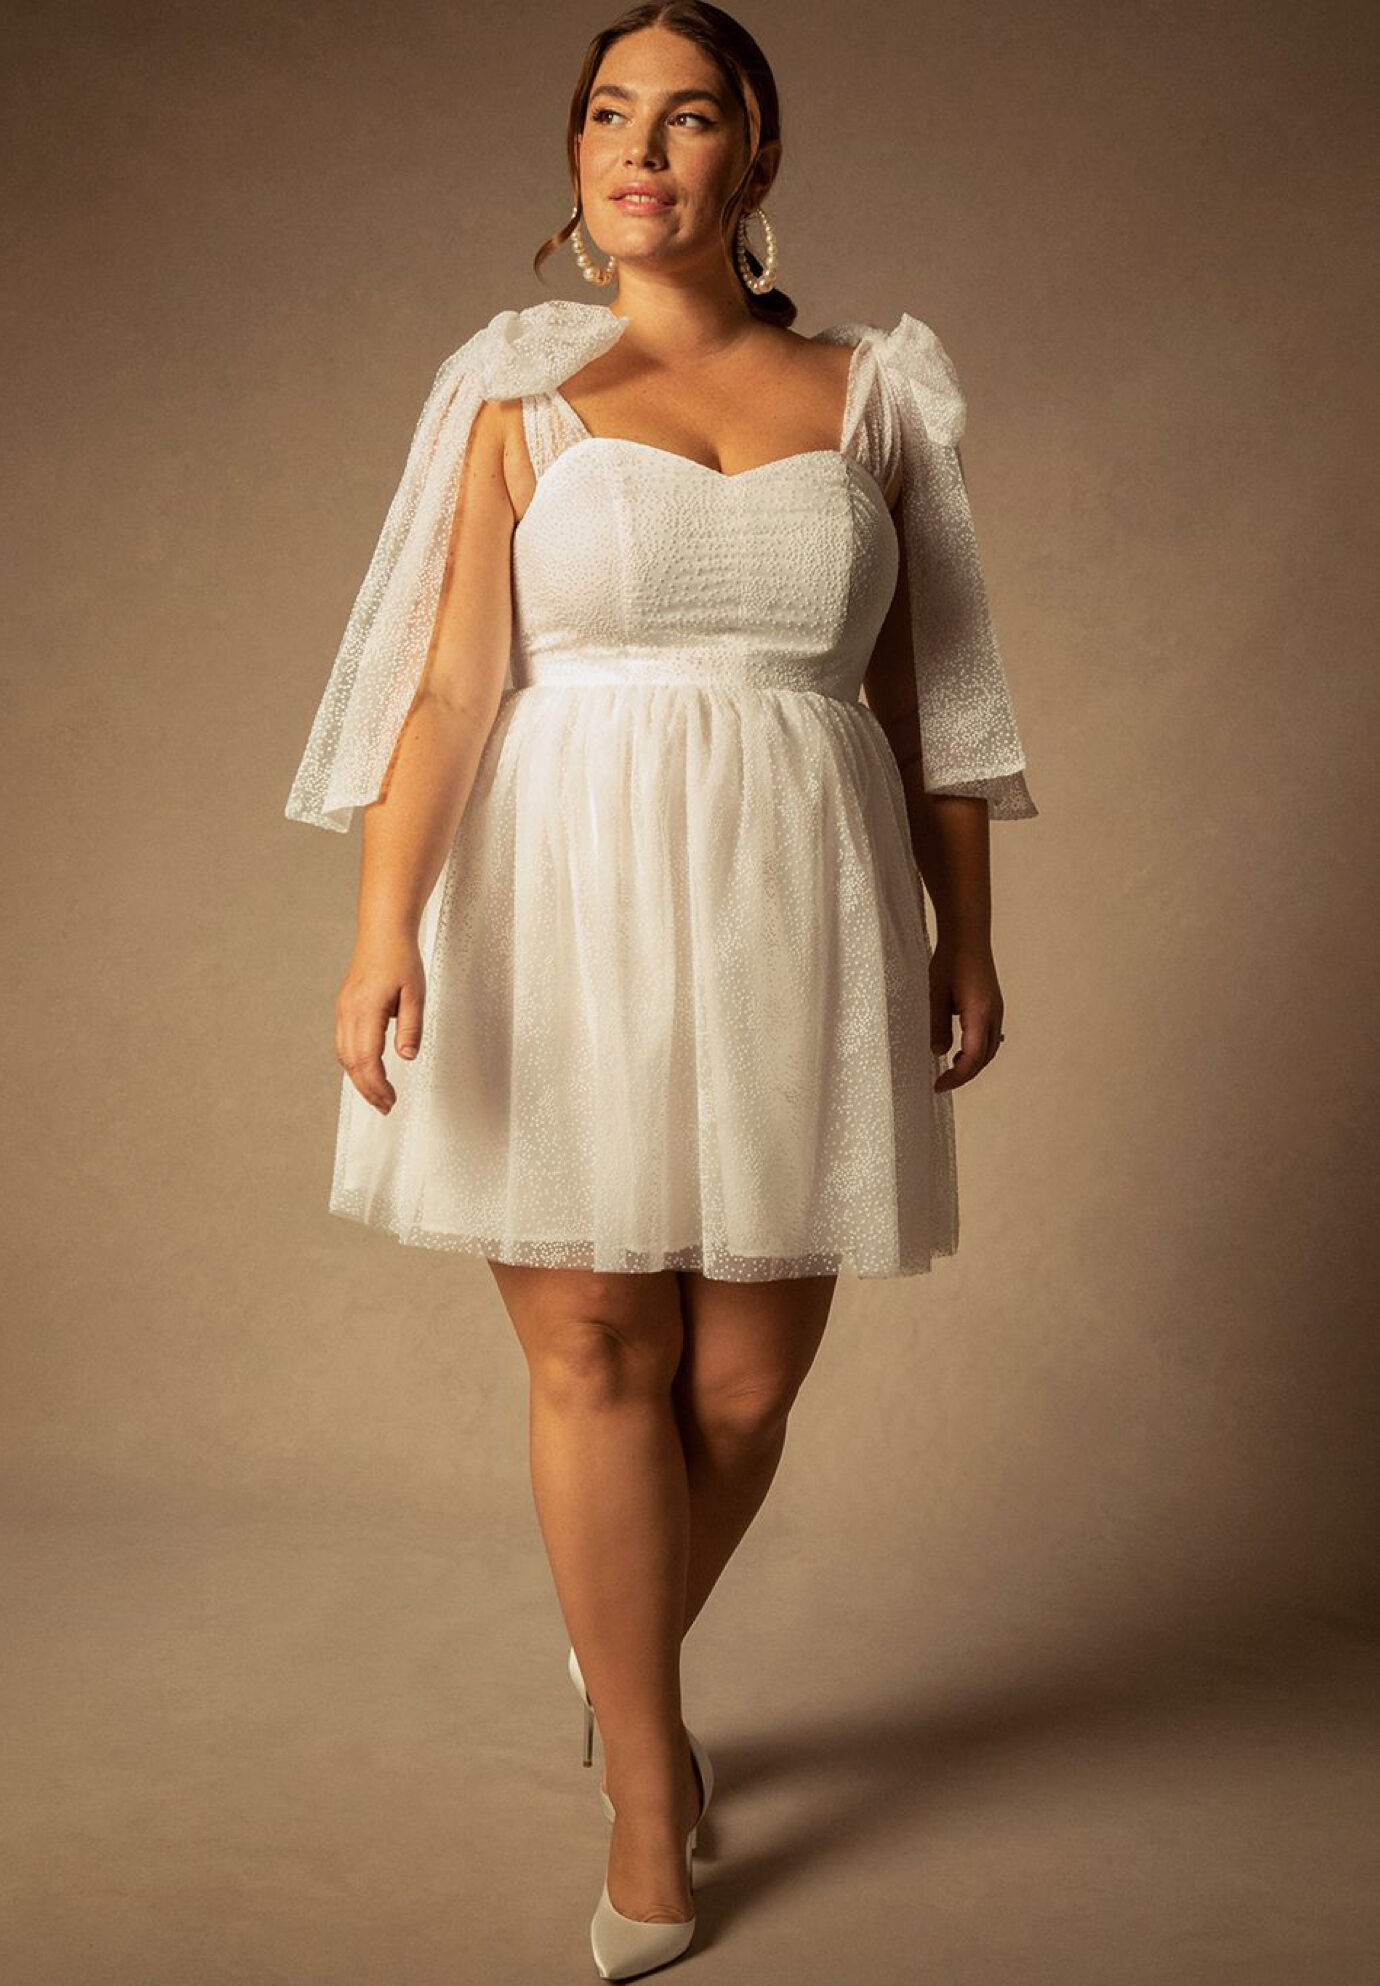 Plus Size Fitted Short Full-Skirt Wedding Dress